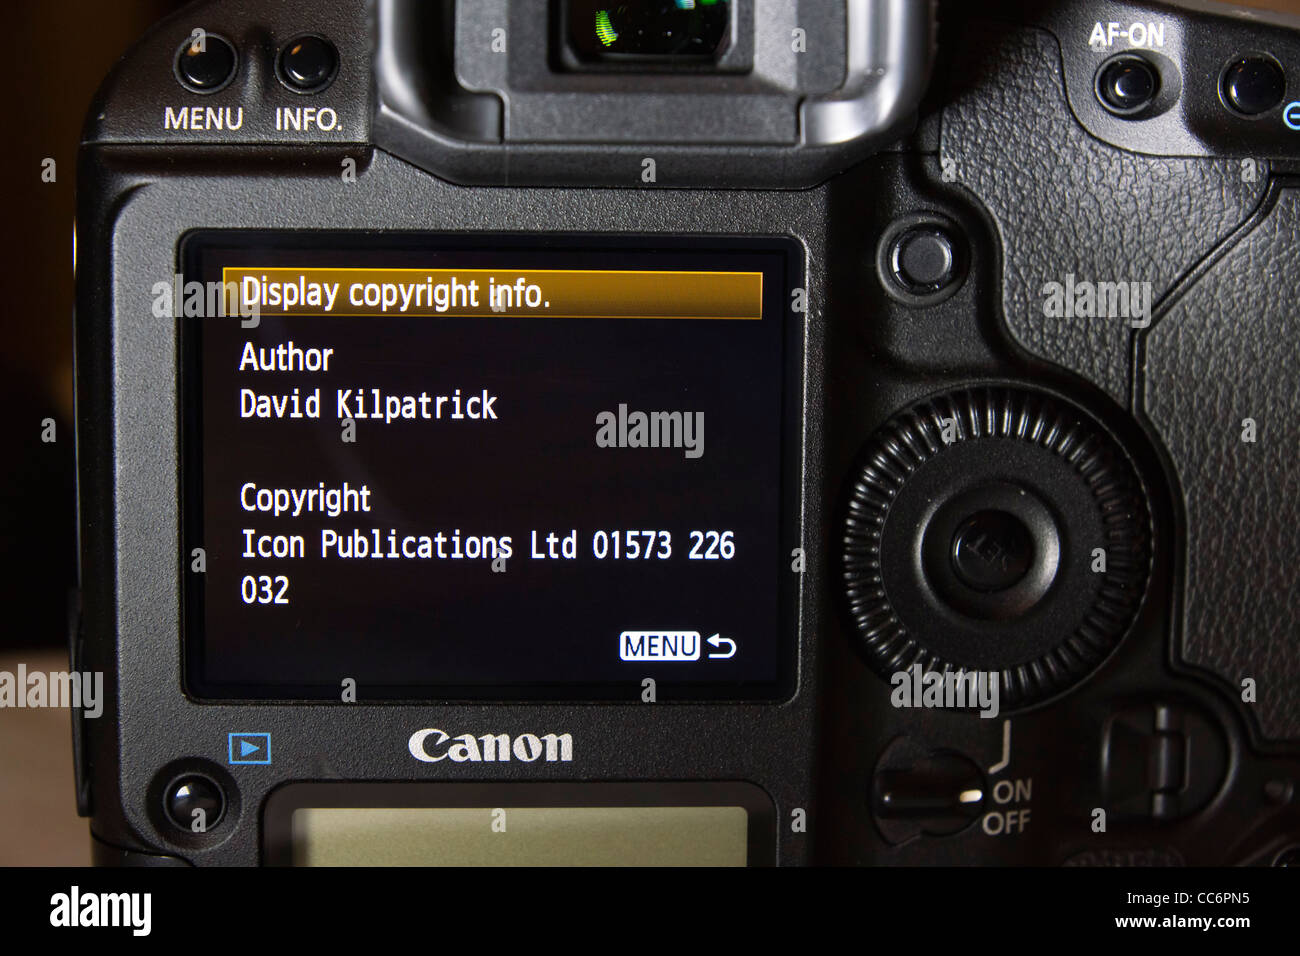 Saisie de données de copyright dans la mémoire d'un appareil photo reflex numérique professionnel Canon, d'intégrer cela dans le champs de métadonnées de photographies Banque D'Images